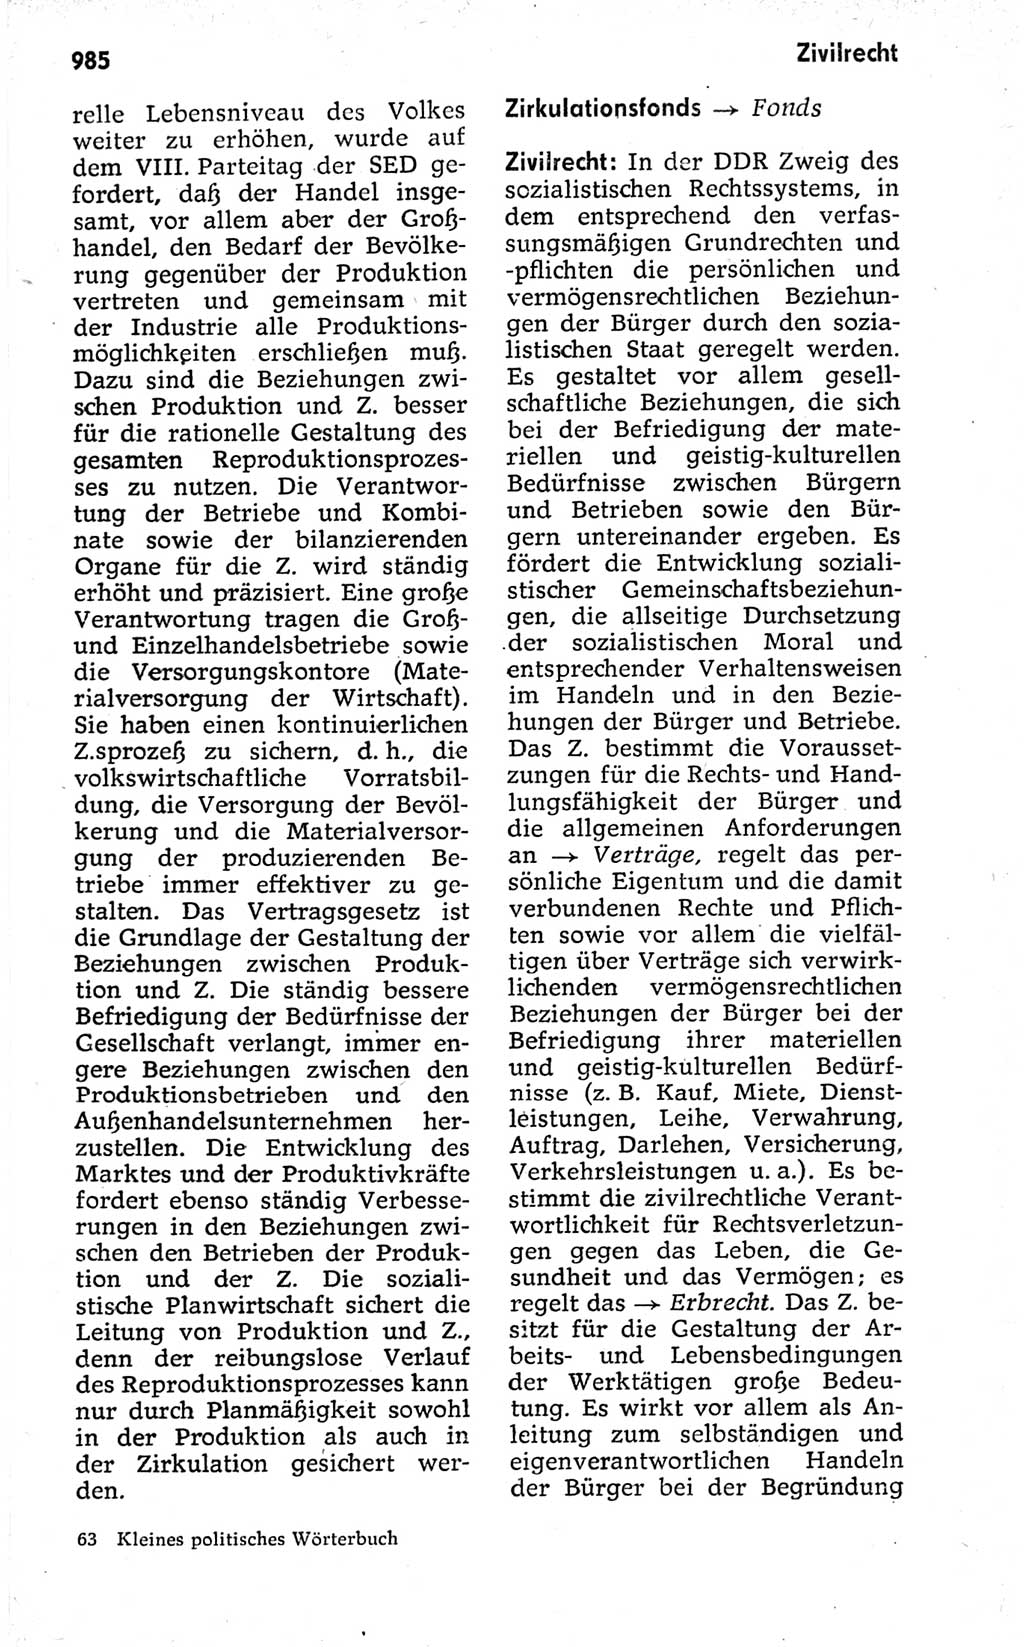 Kleines politisches Wörterbuch [Deutsche Demokratische Republik (DDR)] 1973, Seite 985 (Kl. pol. Wb. DDR 1973, S. 985)